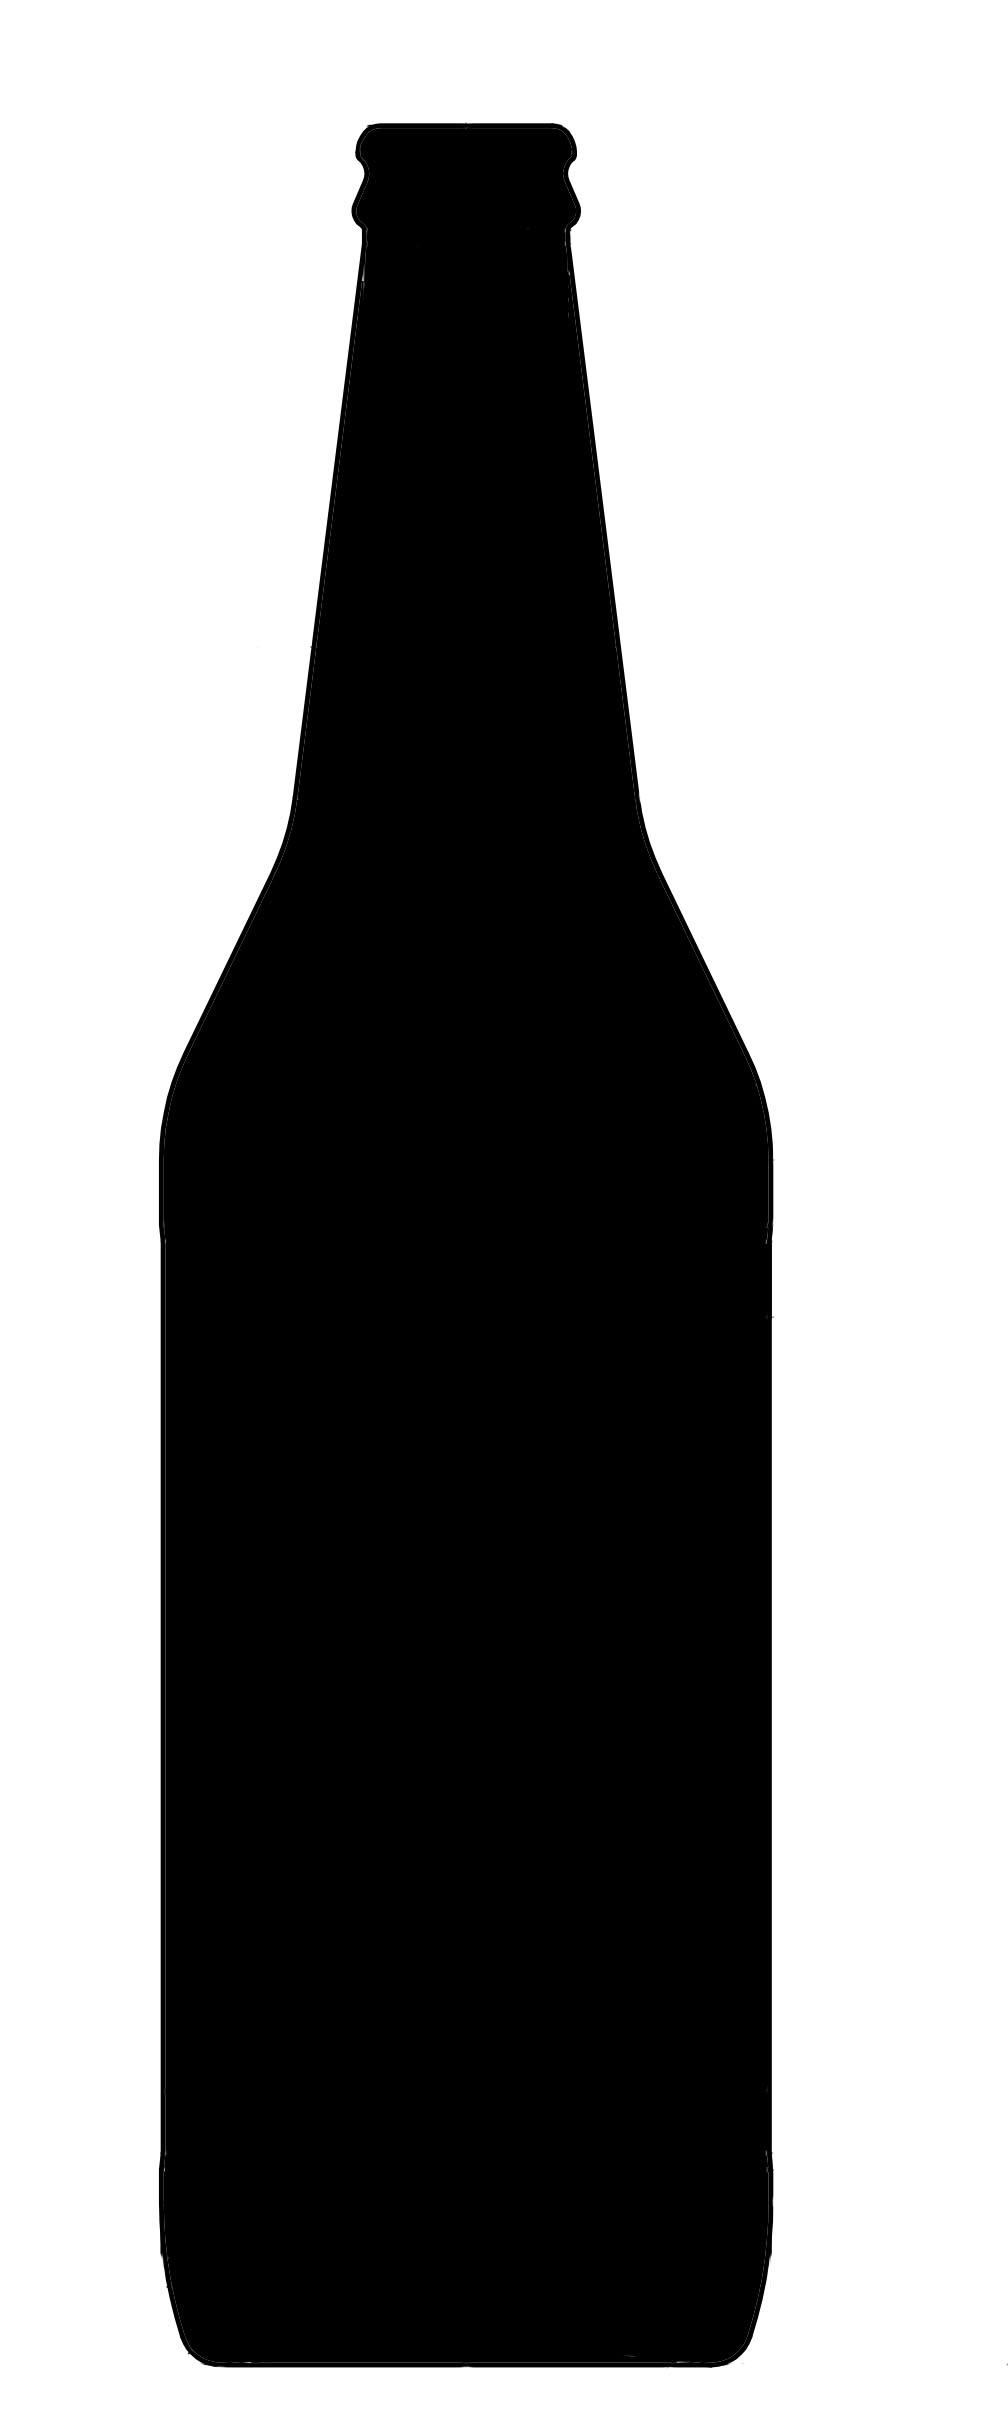 33+ Wine Bottle Silhouette Clip Art